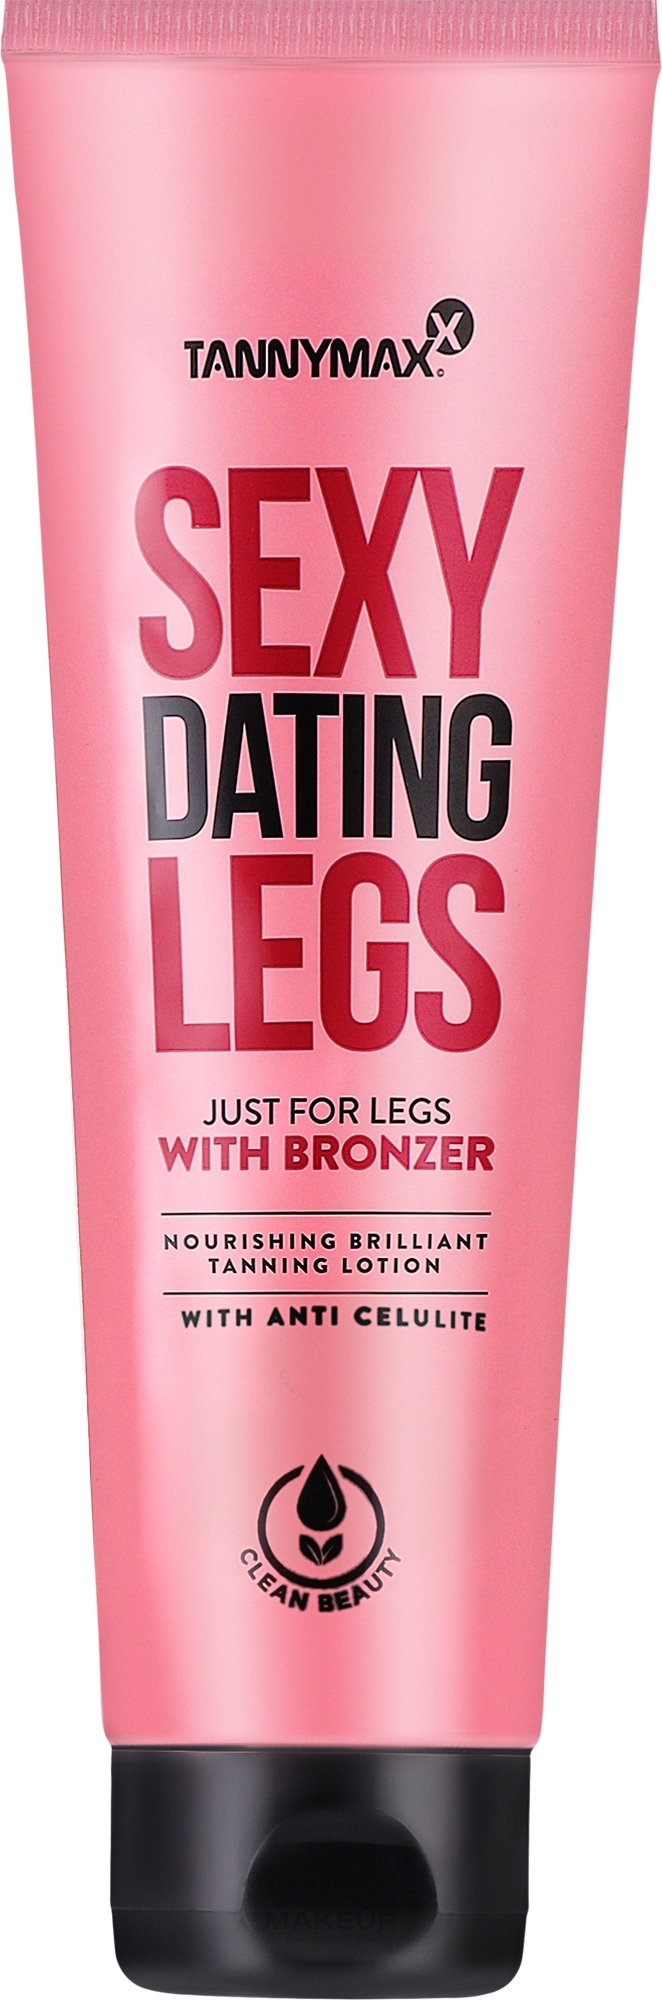 Odżywczy balsam do opalania nóg, o działaniu antycellulitowym - Tannymaxx Sexy Dating Legs With Bronzer Anti-Celulite Very Dark Tanning + Bronzer — Zdjęcie 150 ml